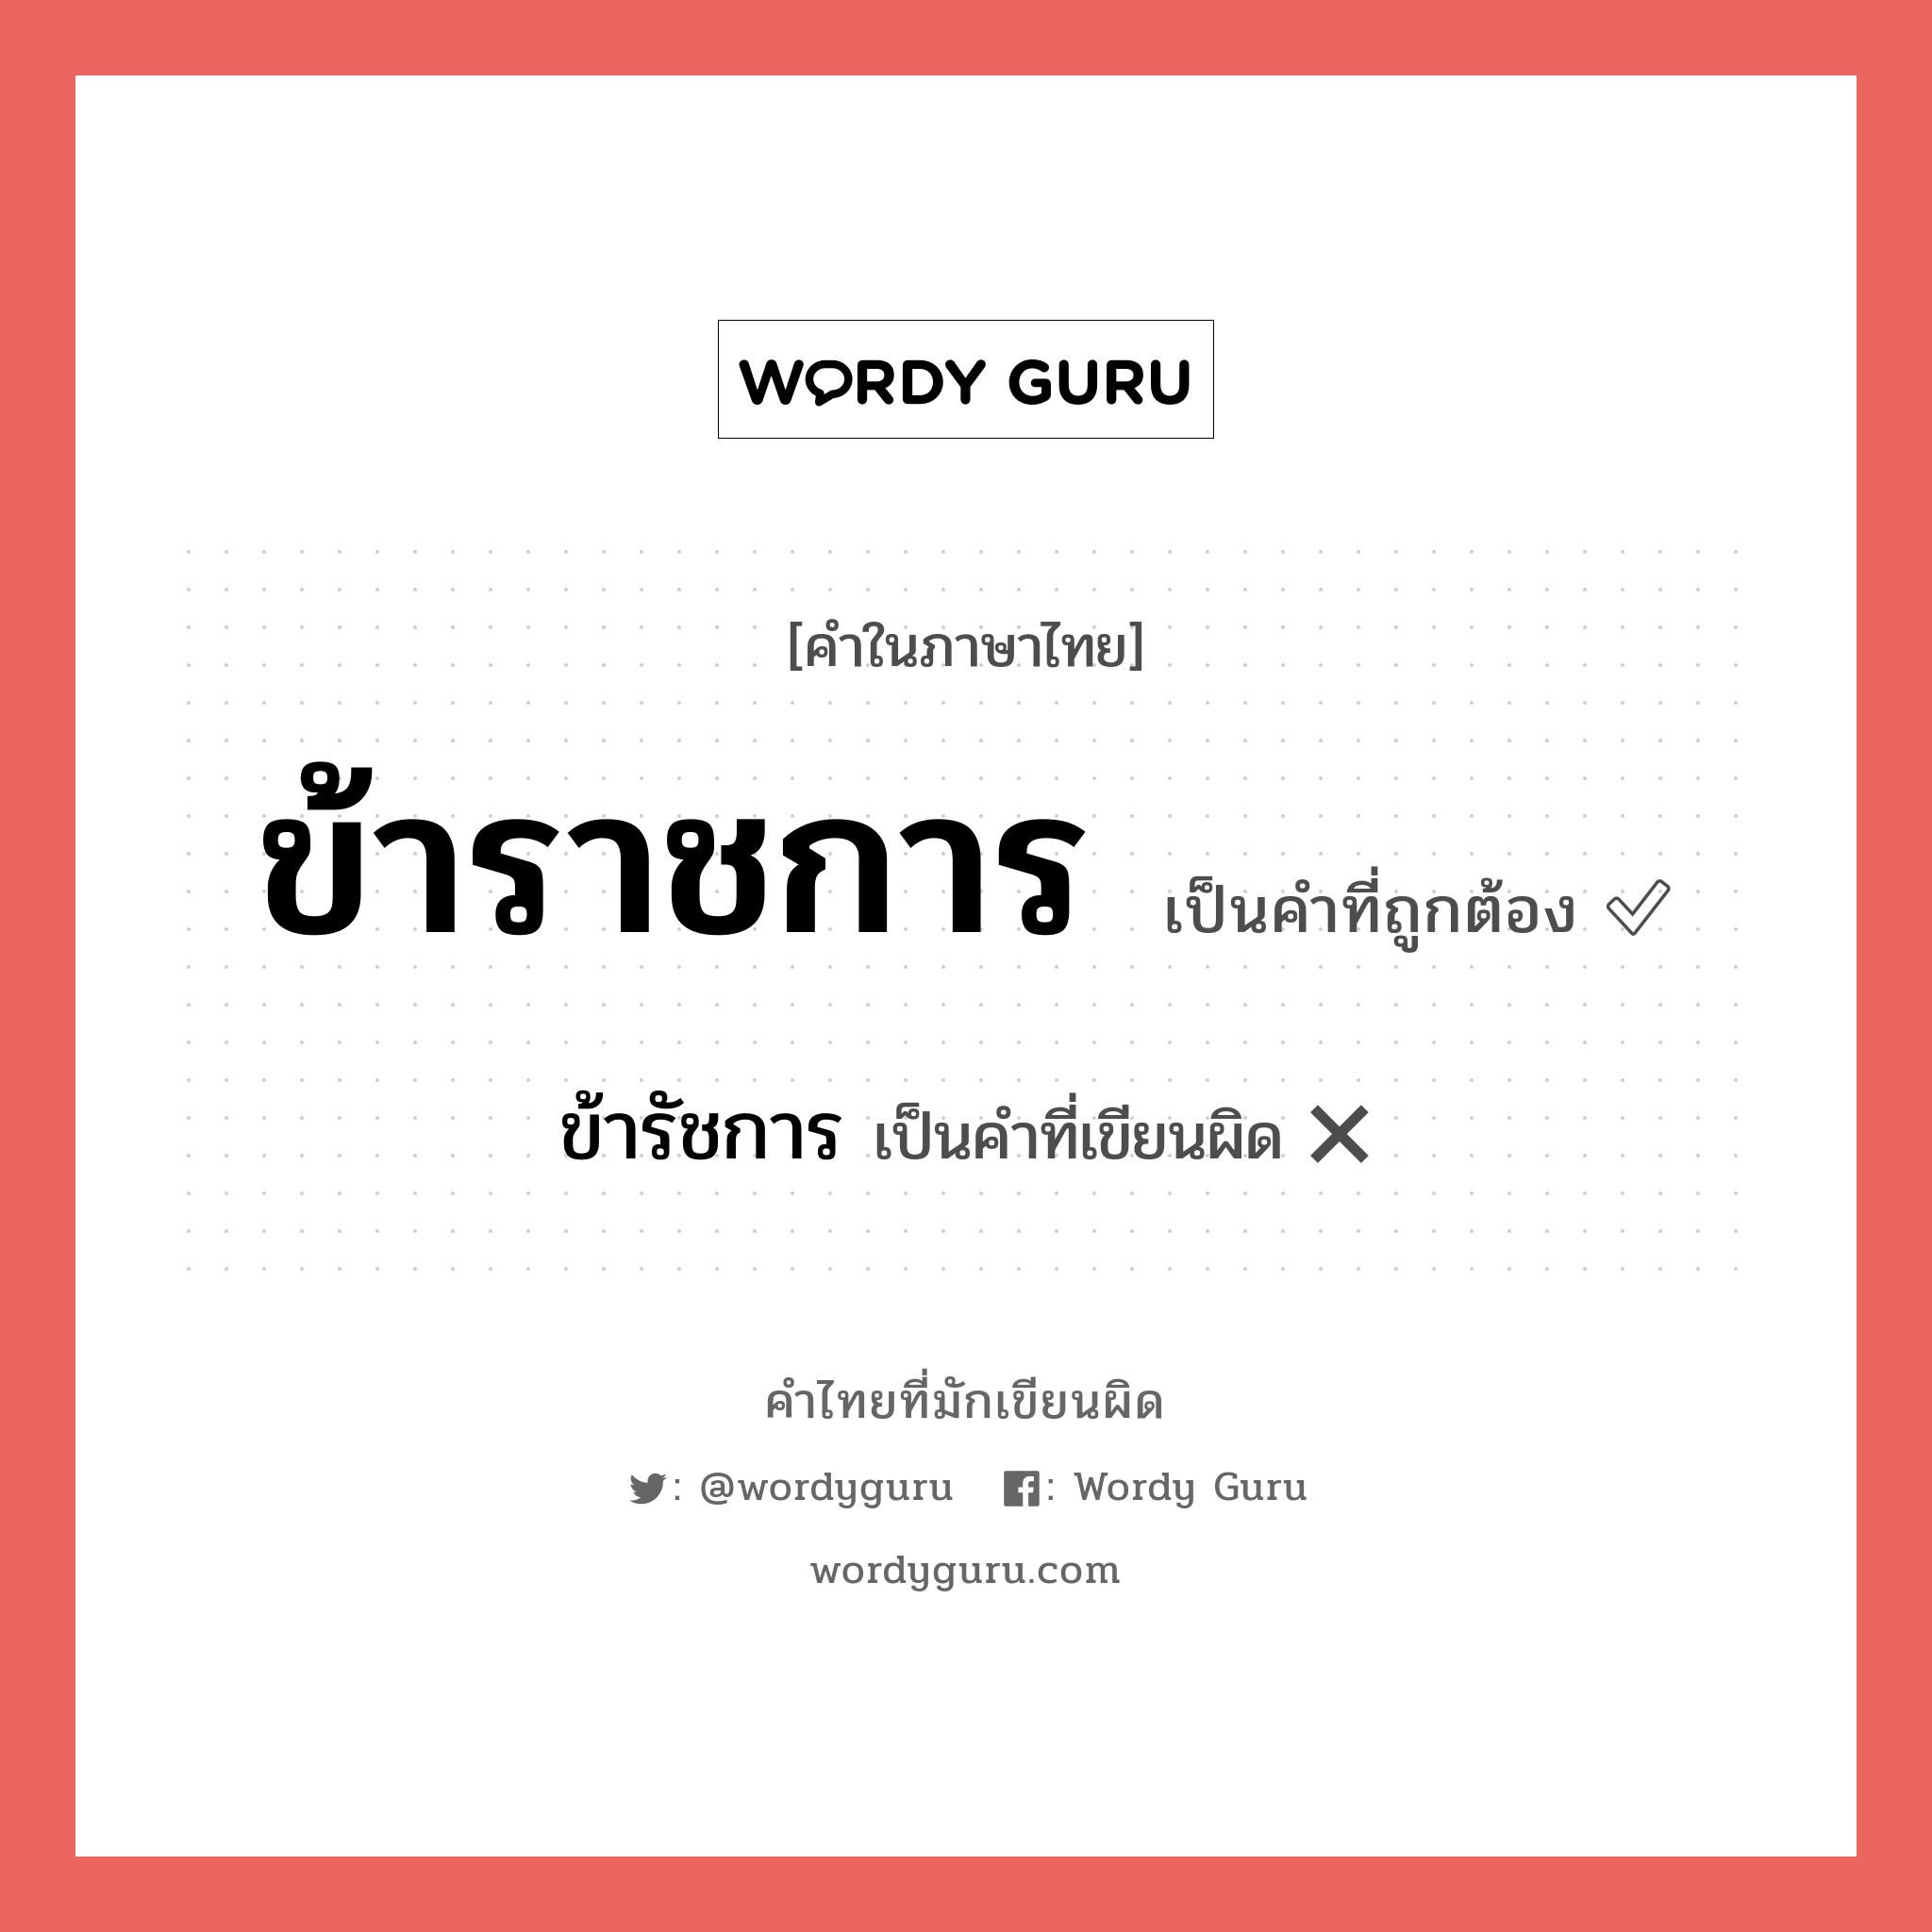 ข้ารัชการ หรือ ข้าราชการ คำไหนเขียนถูก?, คำในภาษาไทยที่มักเขียนผิด ข้ารัชการ คำที่ผิด ❌ ข้าราชการ